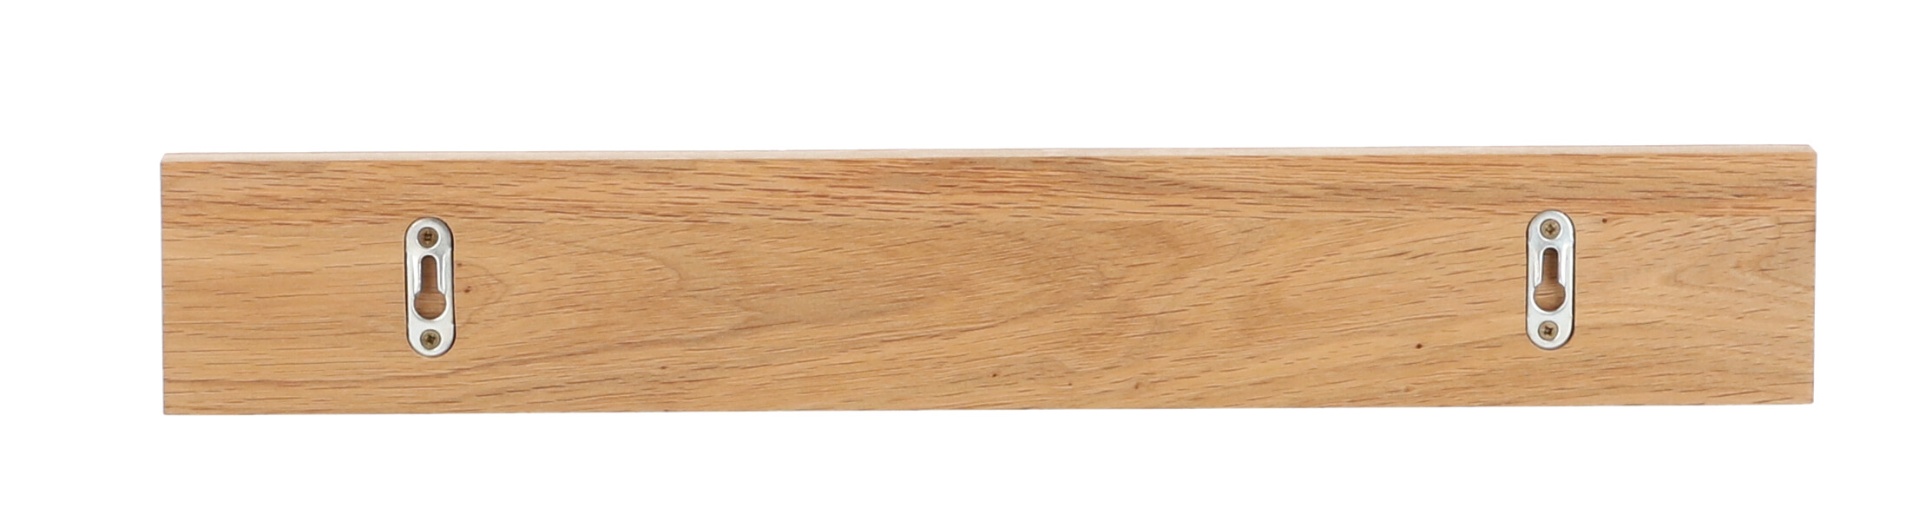 Das schlichte Wandregal Ell von der Marke Jan Kurtz hat ein skandinavisches Design. Gefertigt wurde es aus Eichenholz. Die Breite des Regals ist 50 cm.